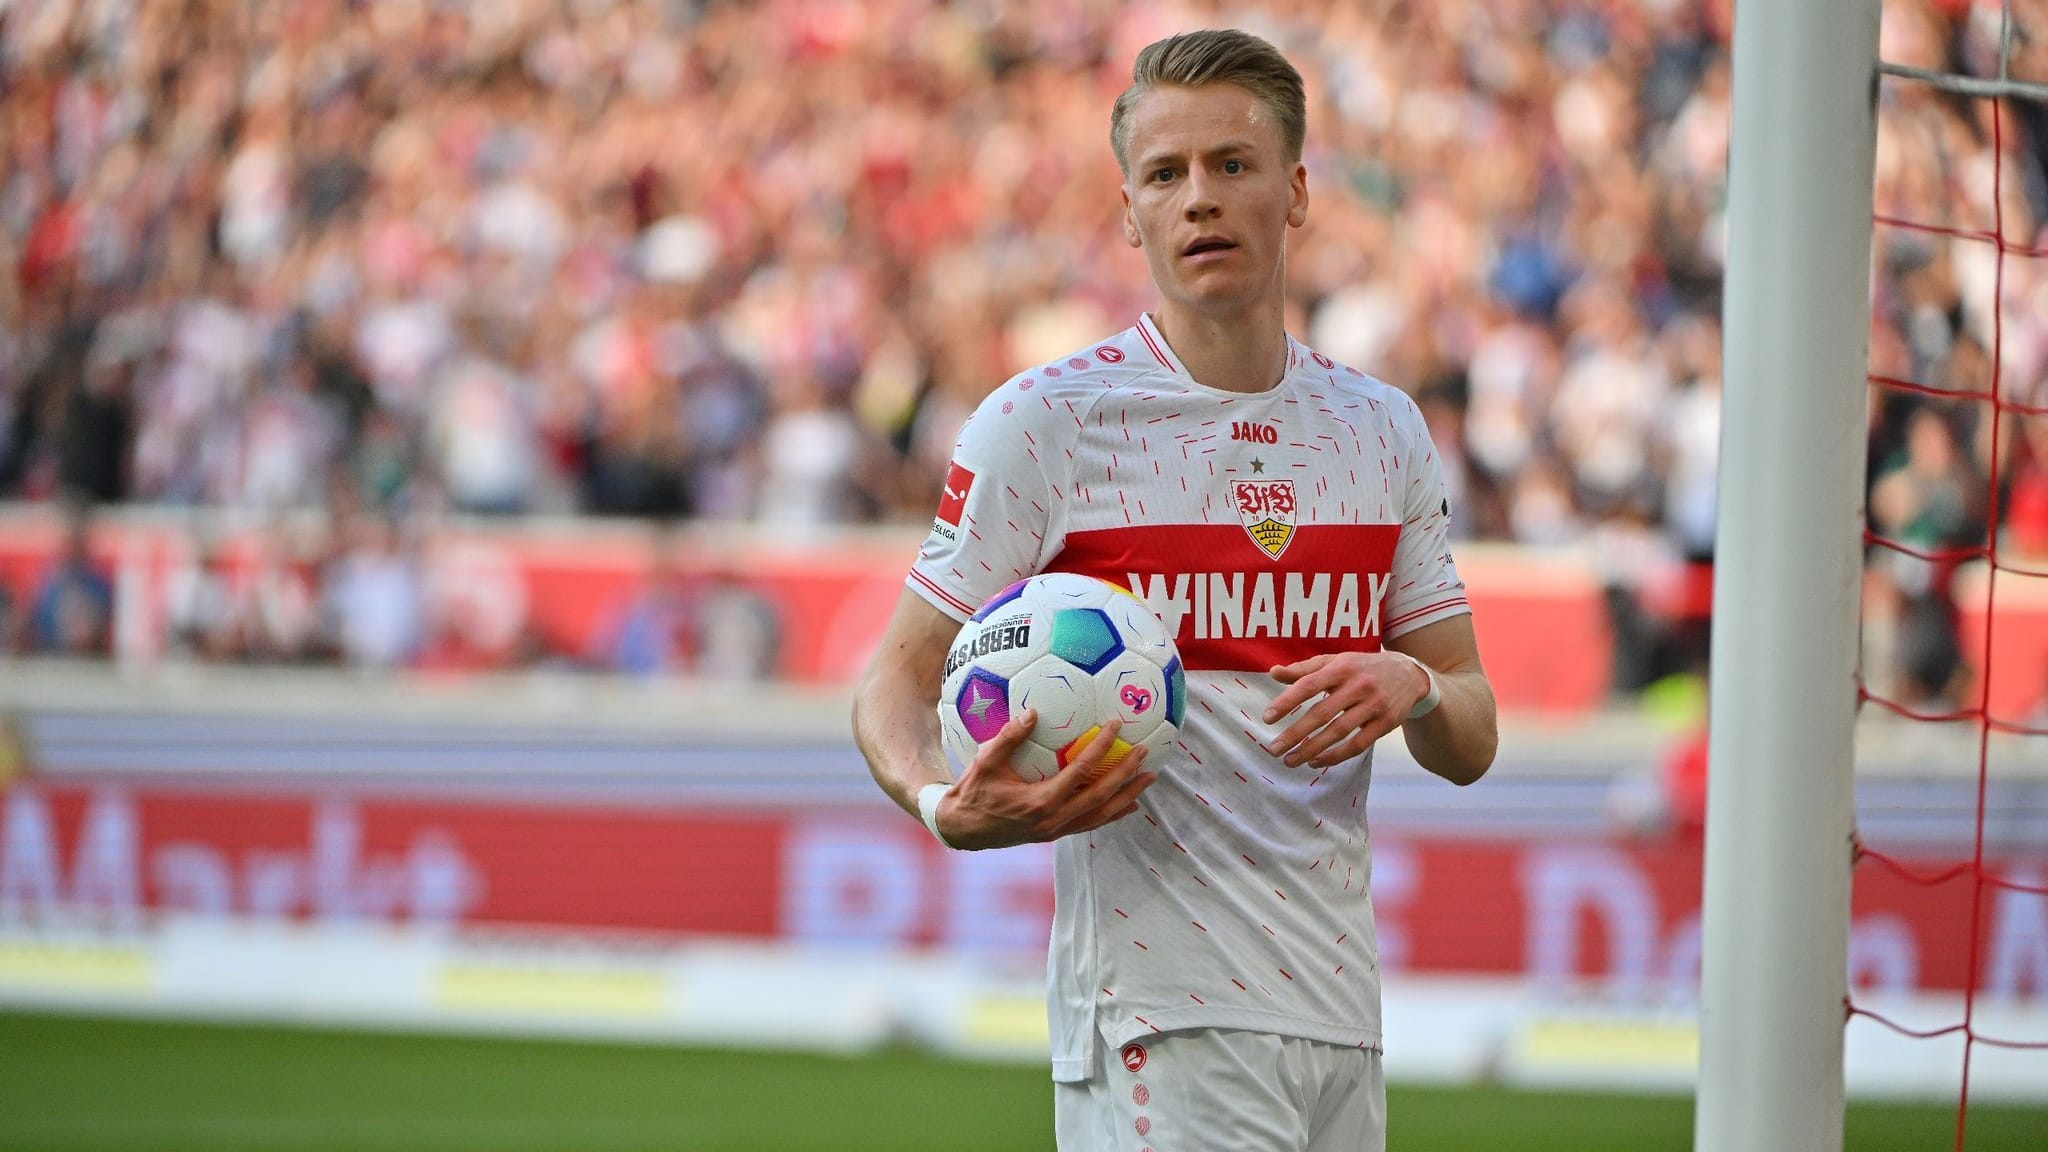 «Kicker»: Führich tendiert zu Wechsel zum FC Bayern